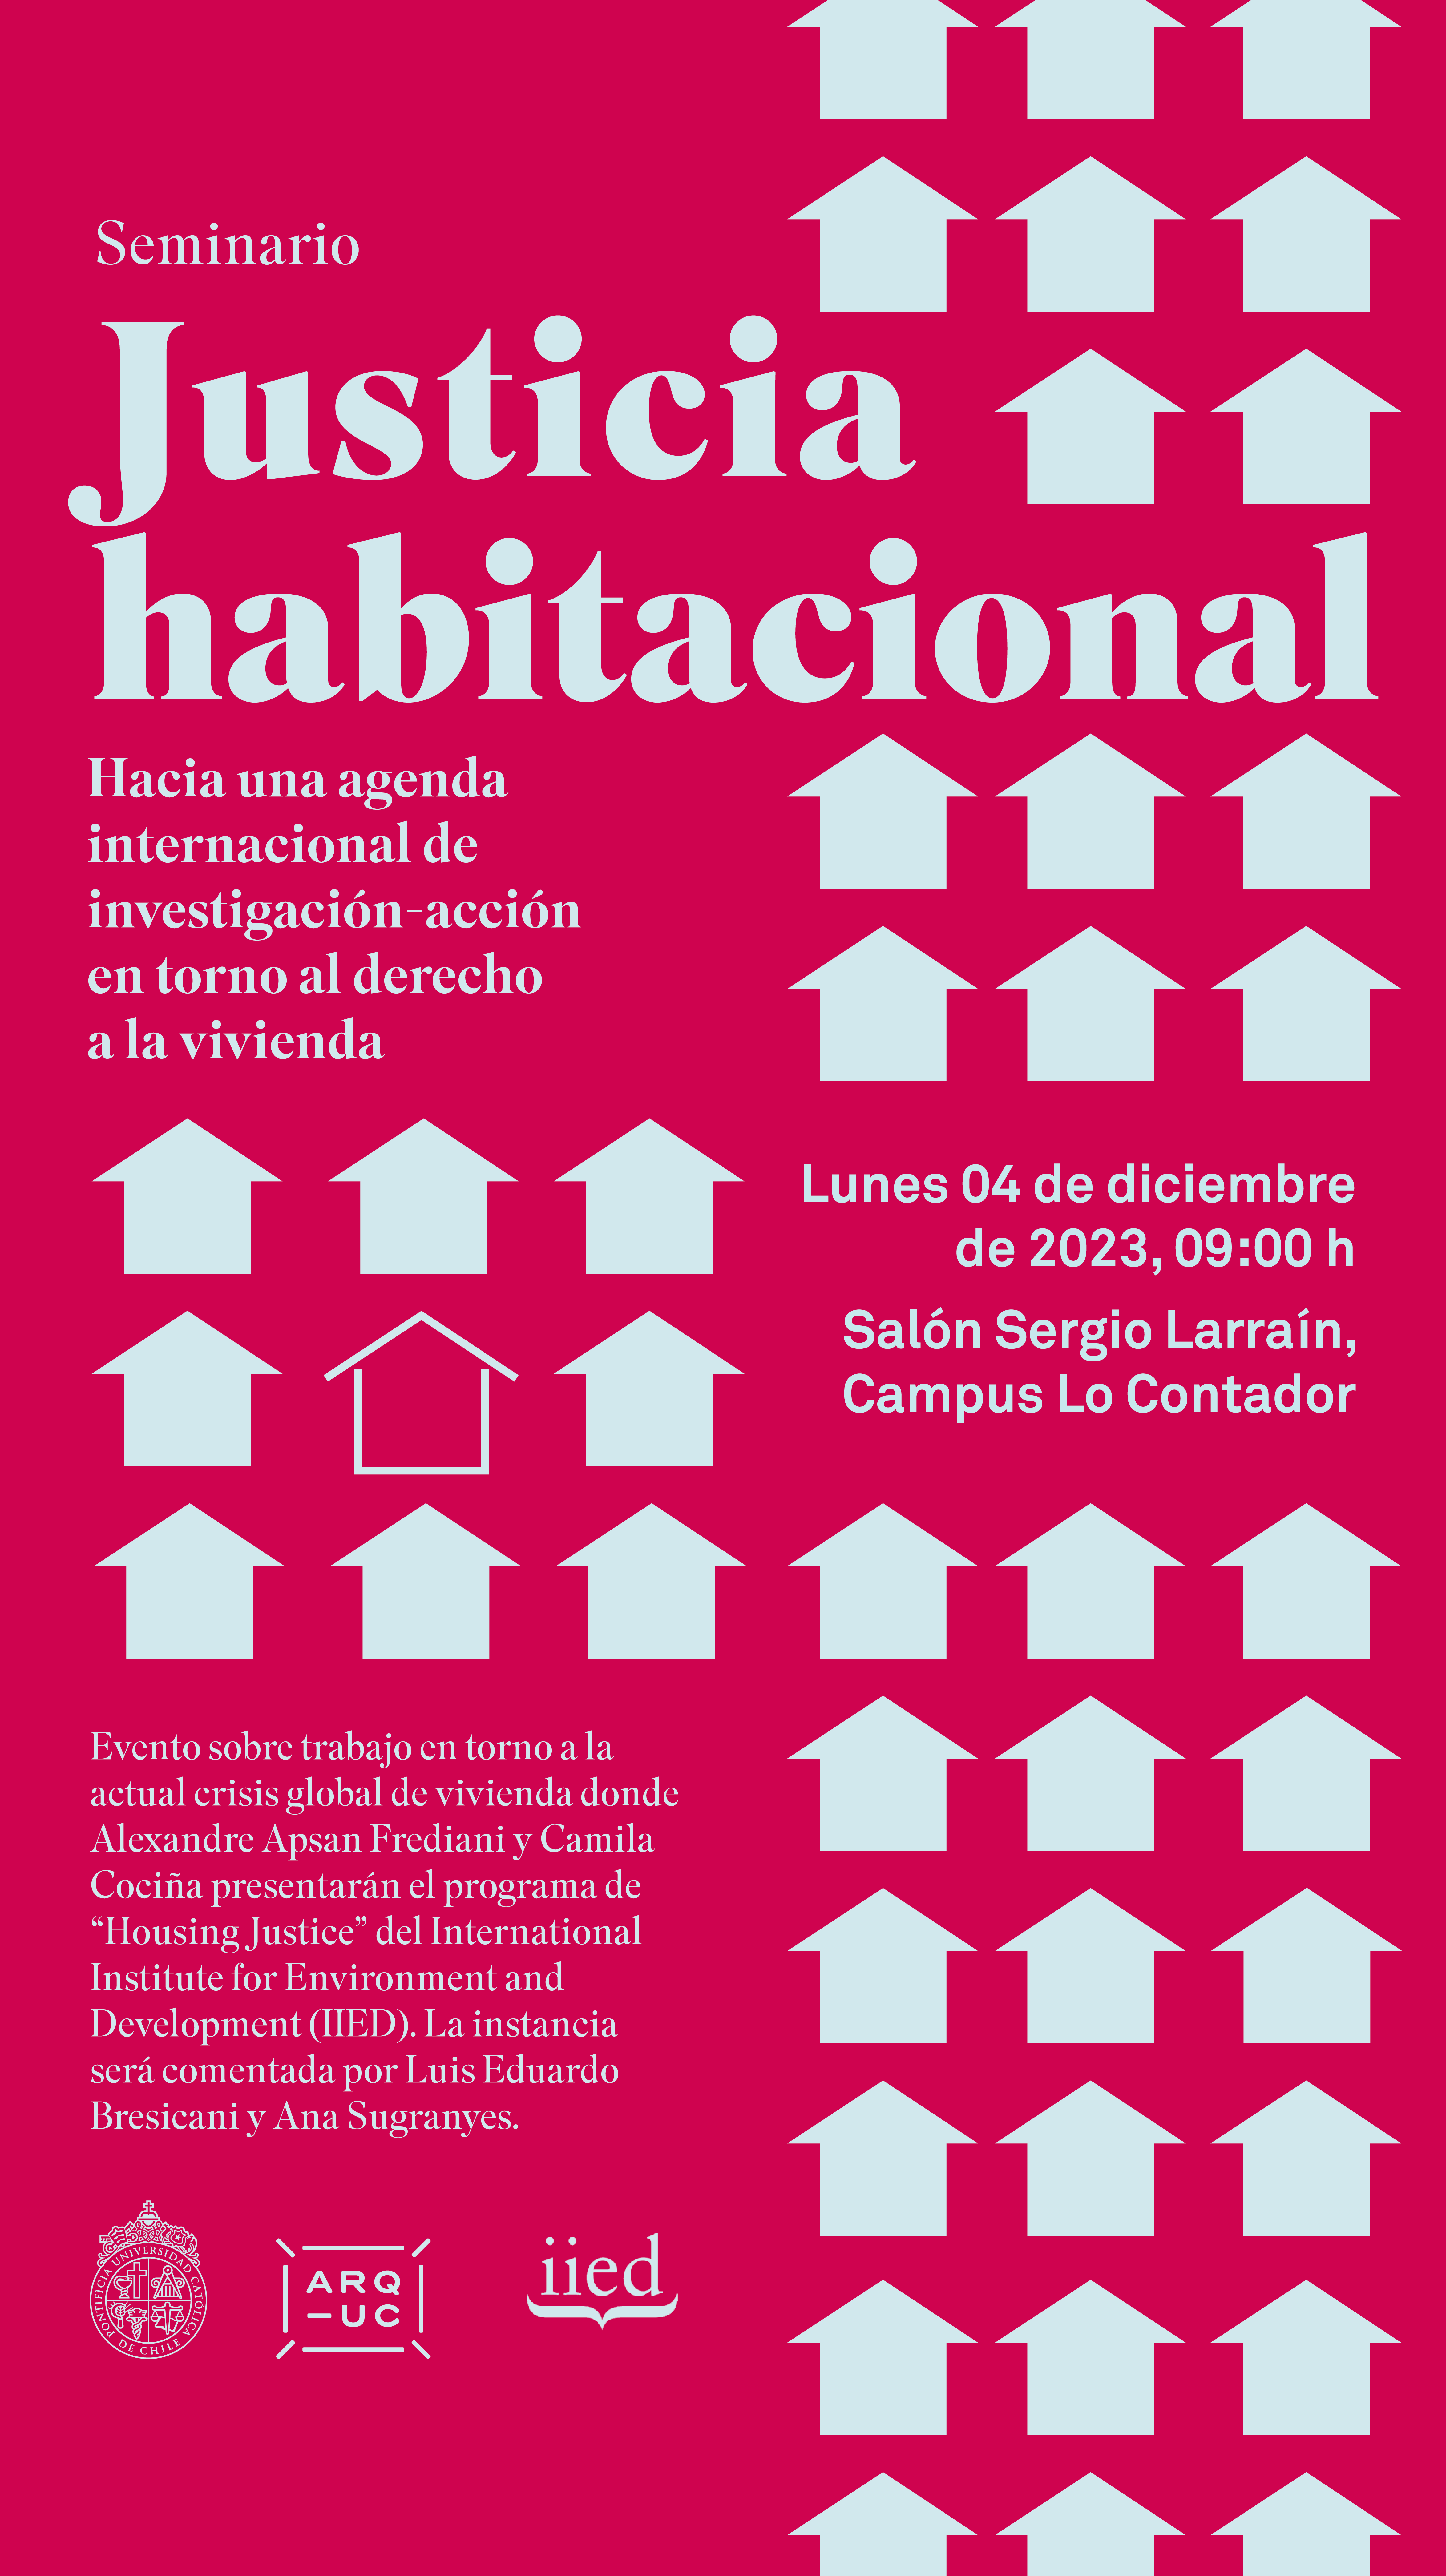 2023-11-29_Afiche_seminario_Justicia_habitacional___Lunes_04_de_diciembre.png